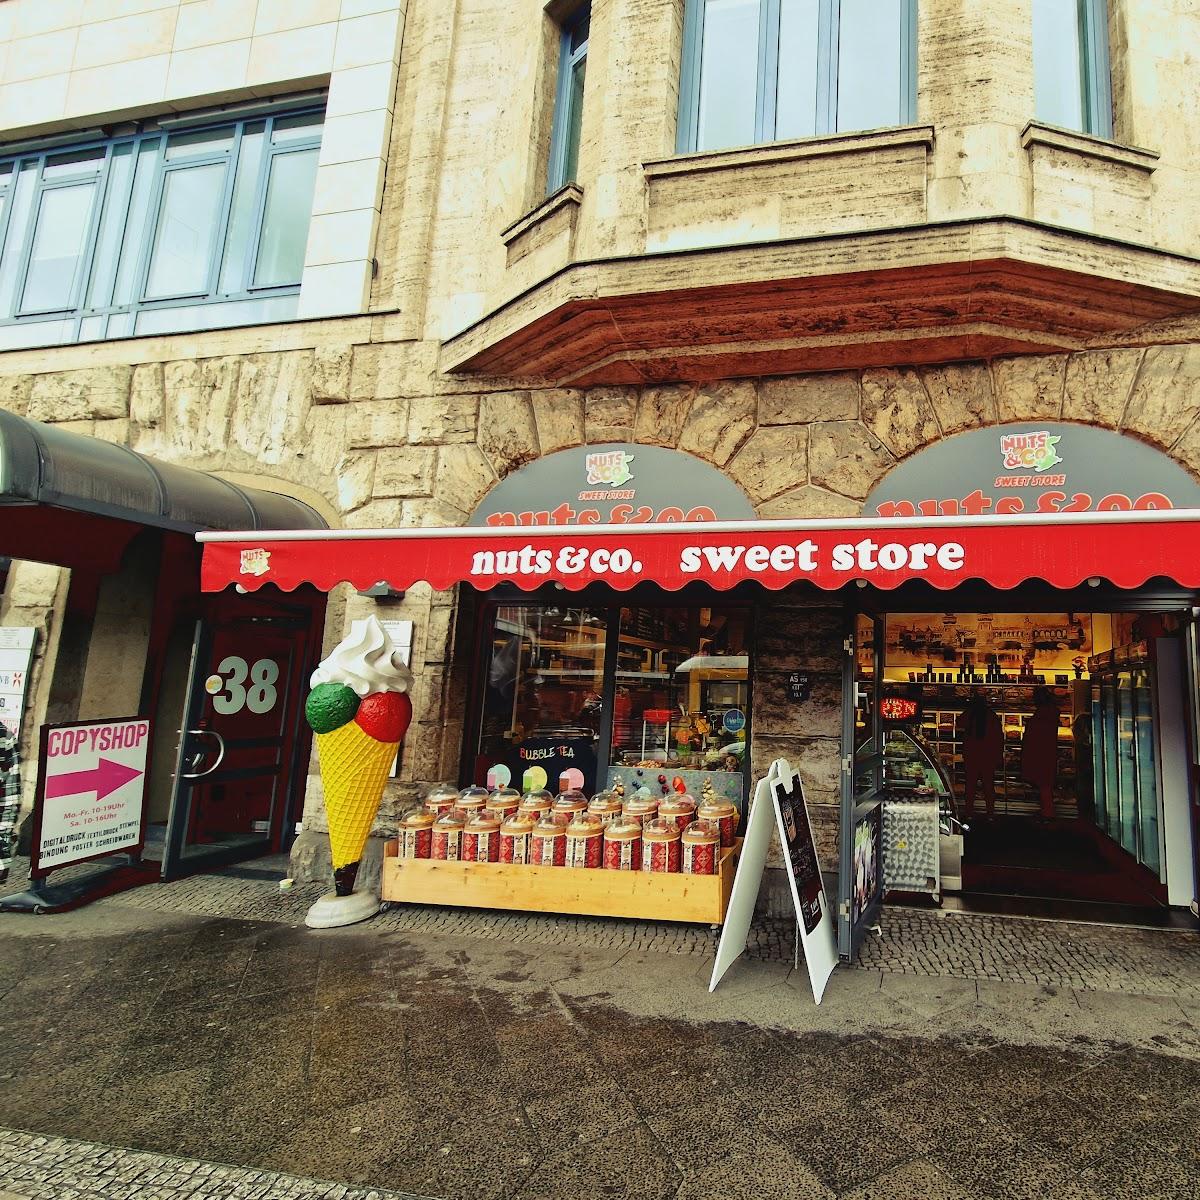 Restaurant "Nuts & Co sweet store" in Berlin